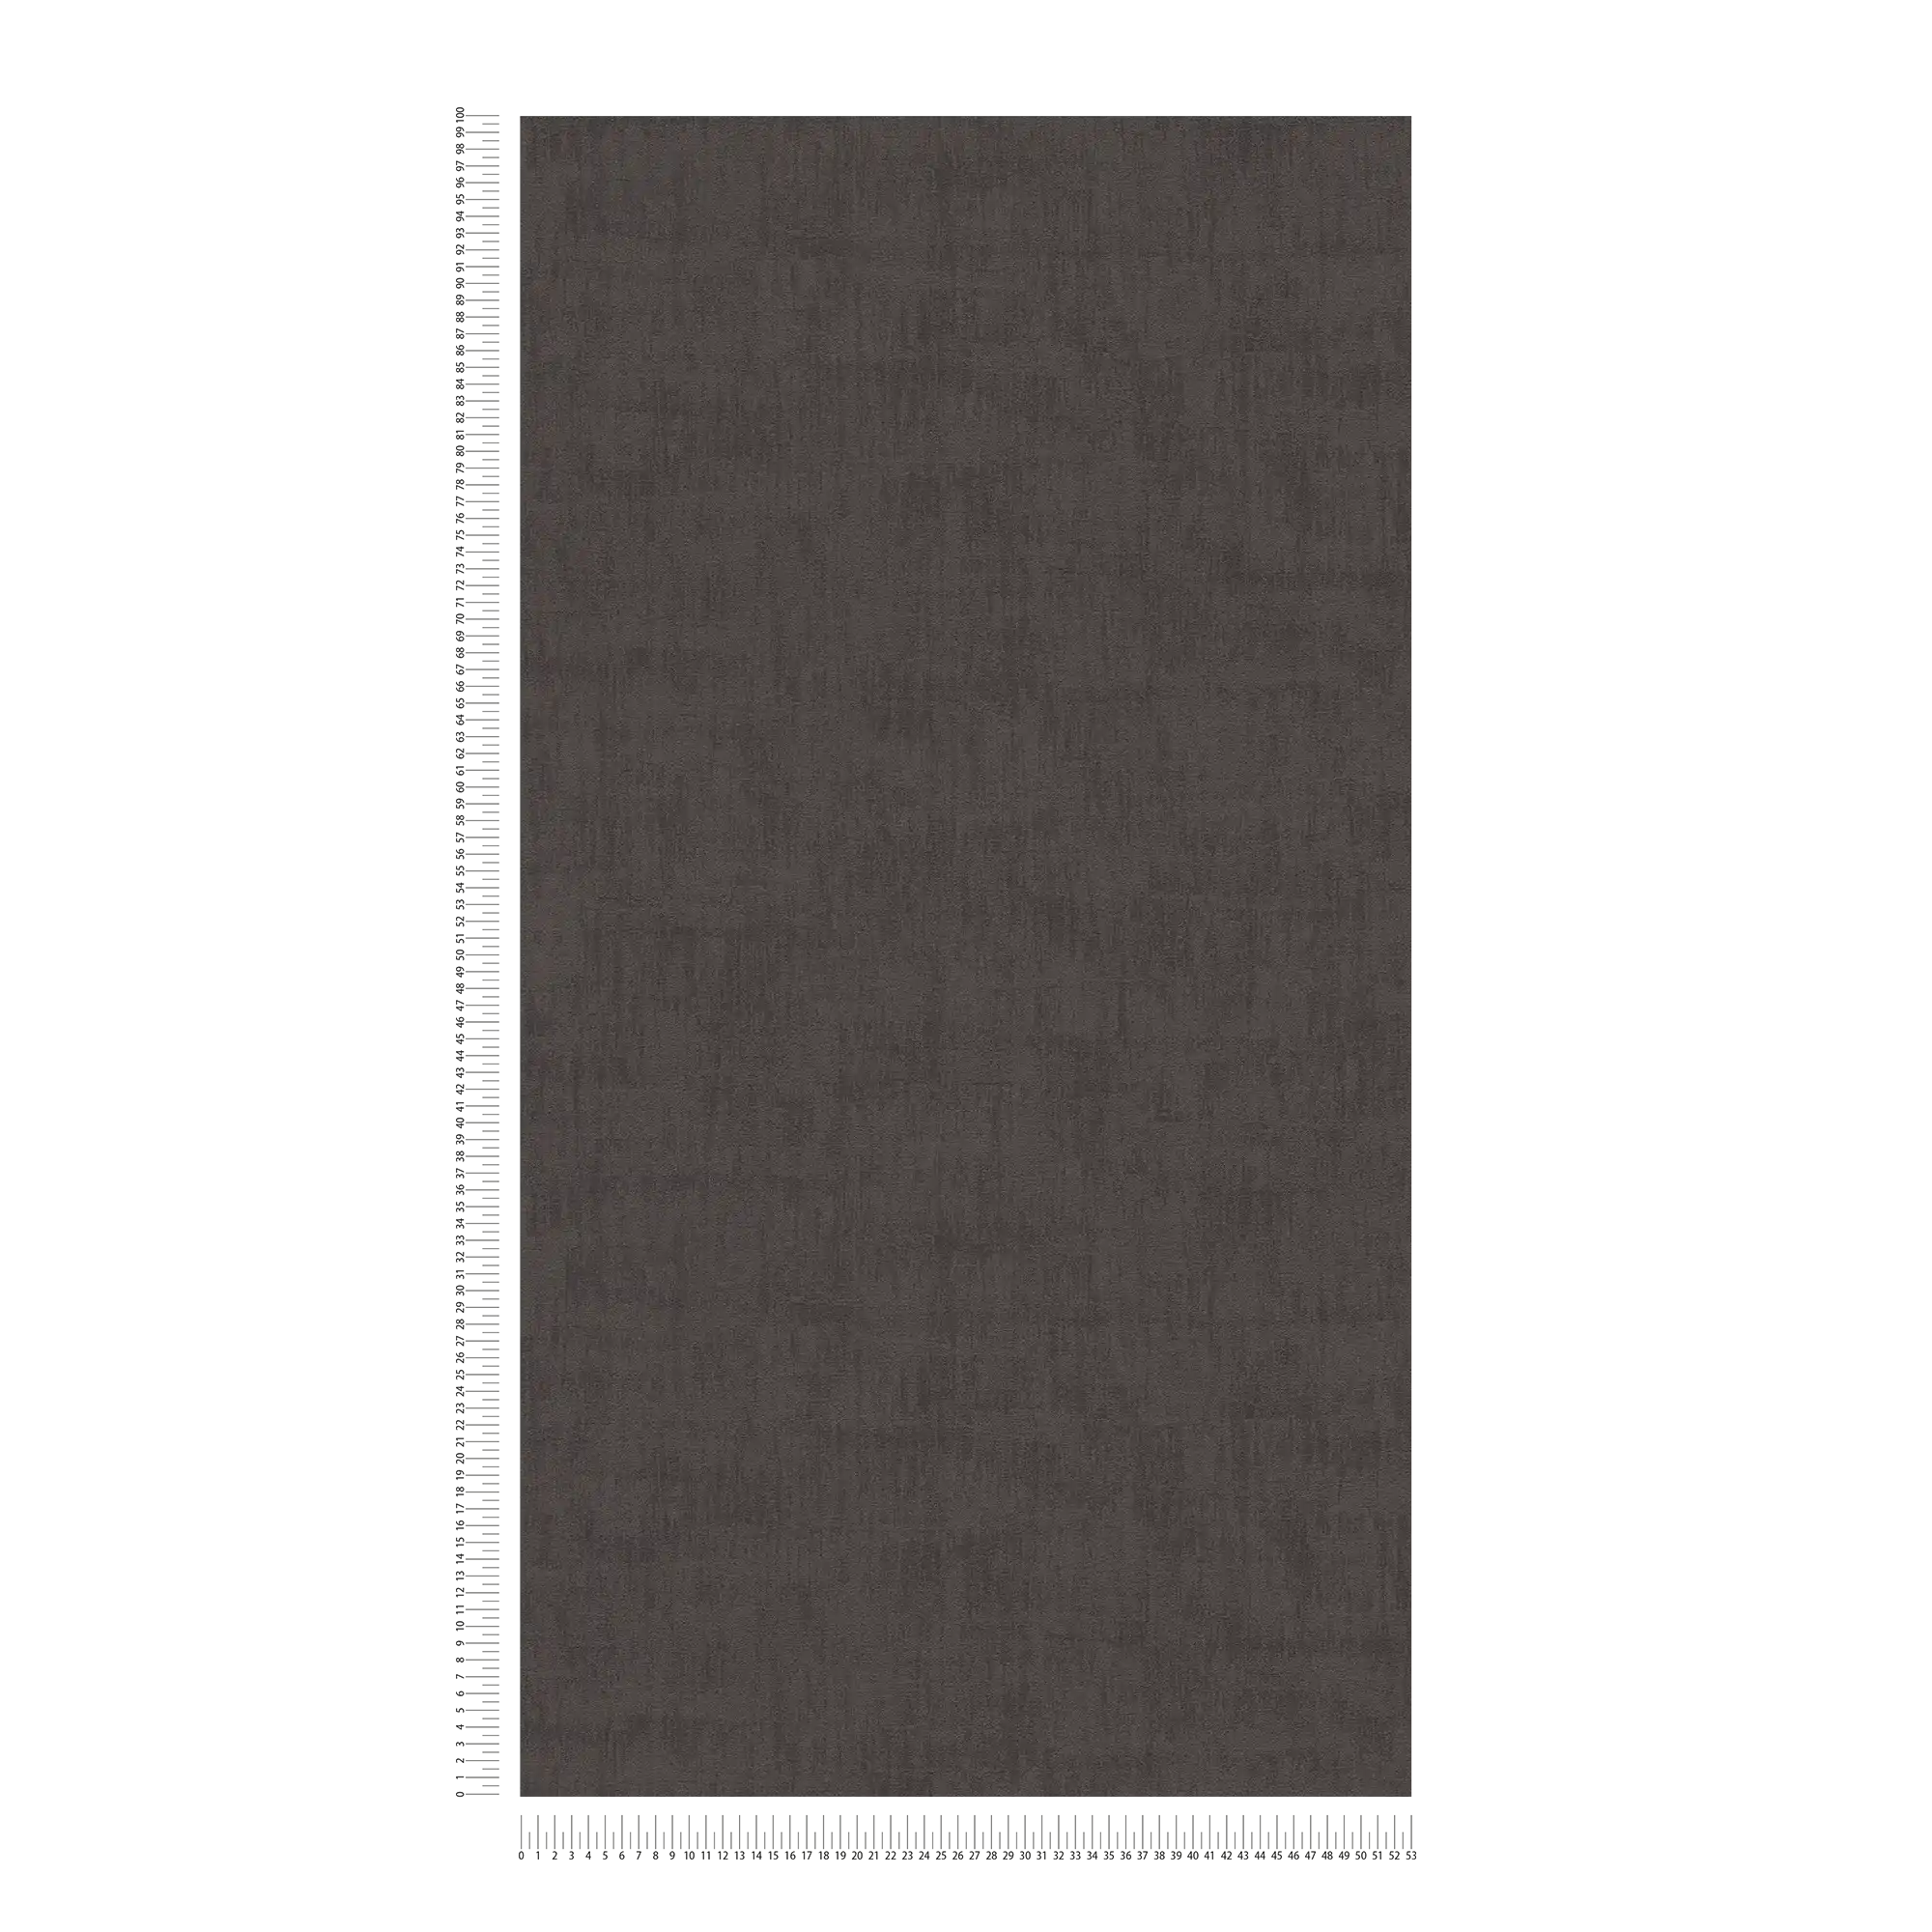             Gebruikt look behang met abstract raffia patroon - zwart
        